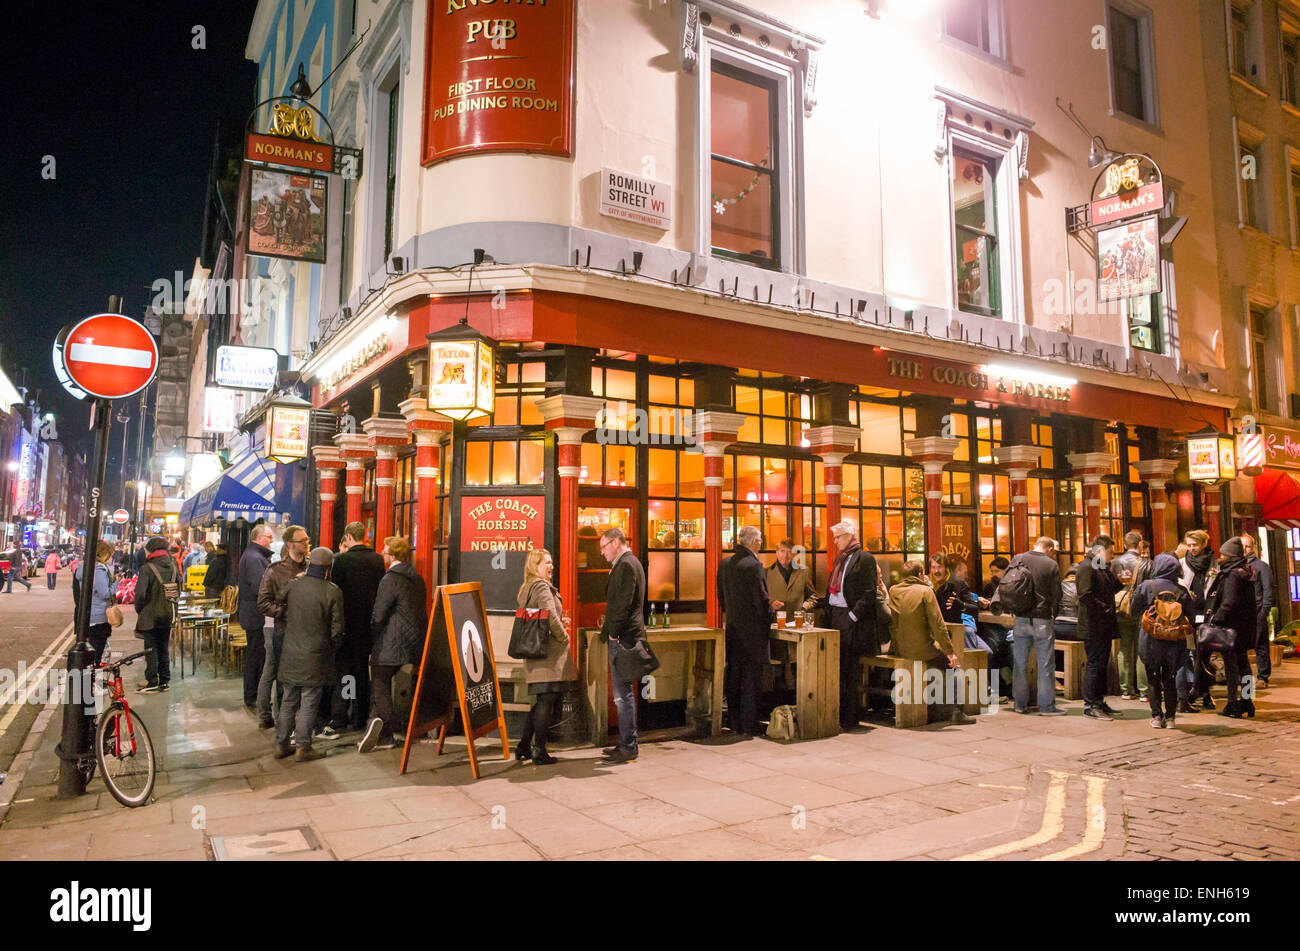 People drinking outside the Coach and Horses pub, Soho, London, England, UK Stock Photo